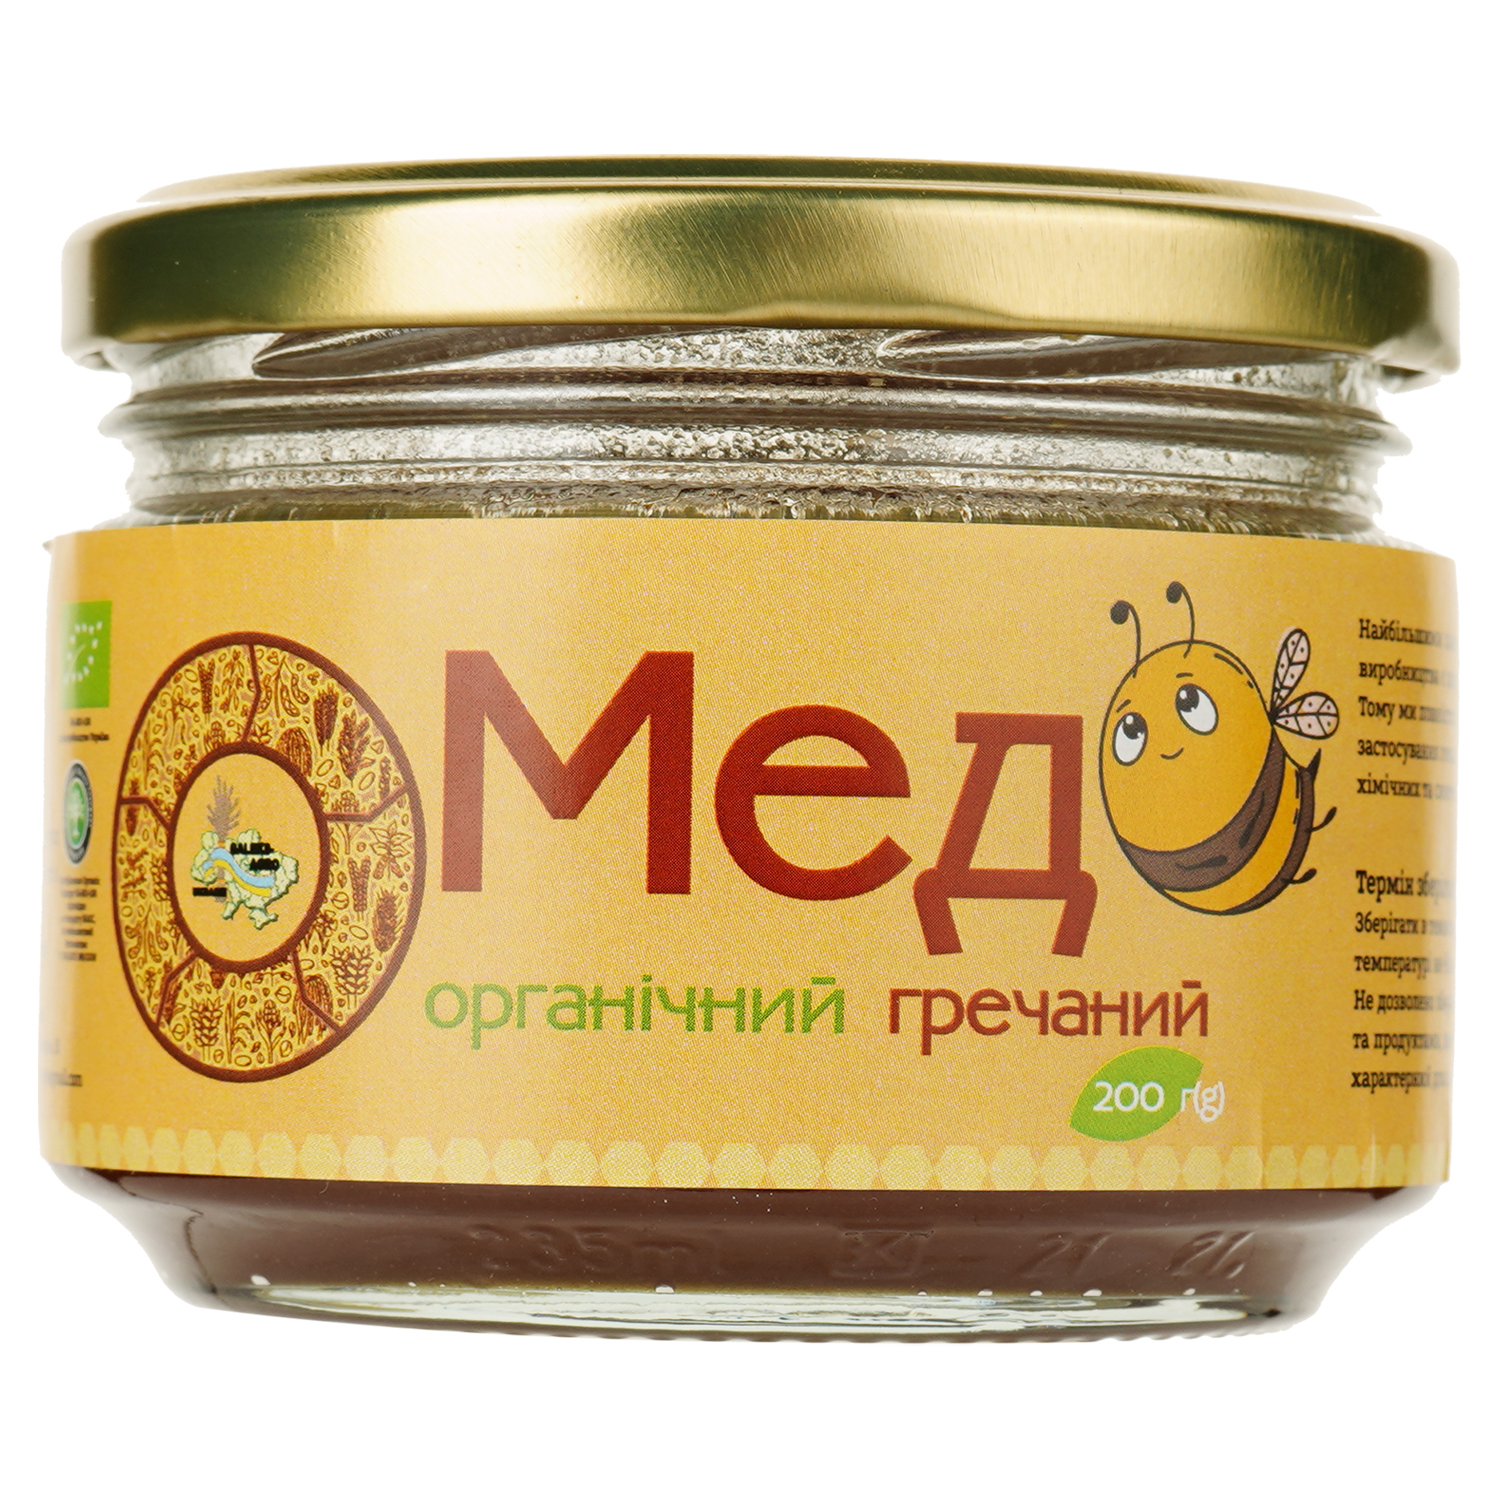 Мед Galeks-Agro гречневый органический 200 г - фото 1